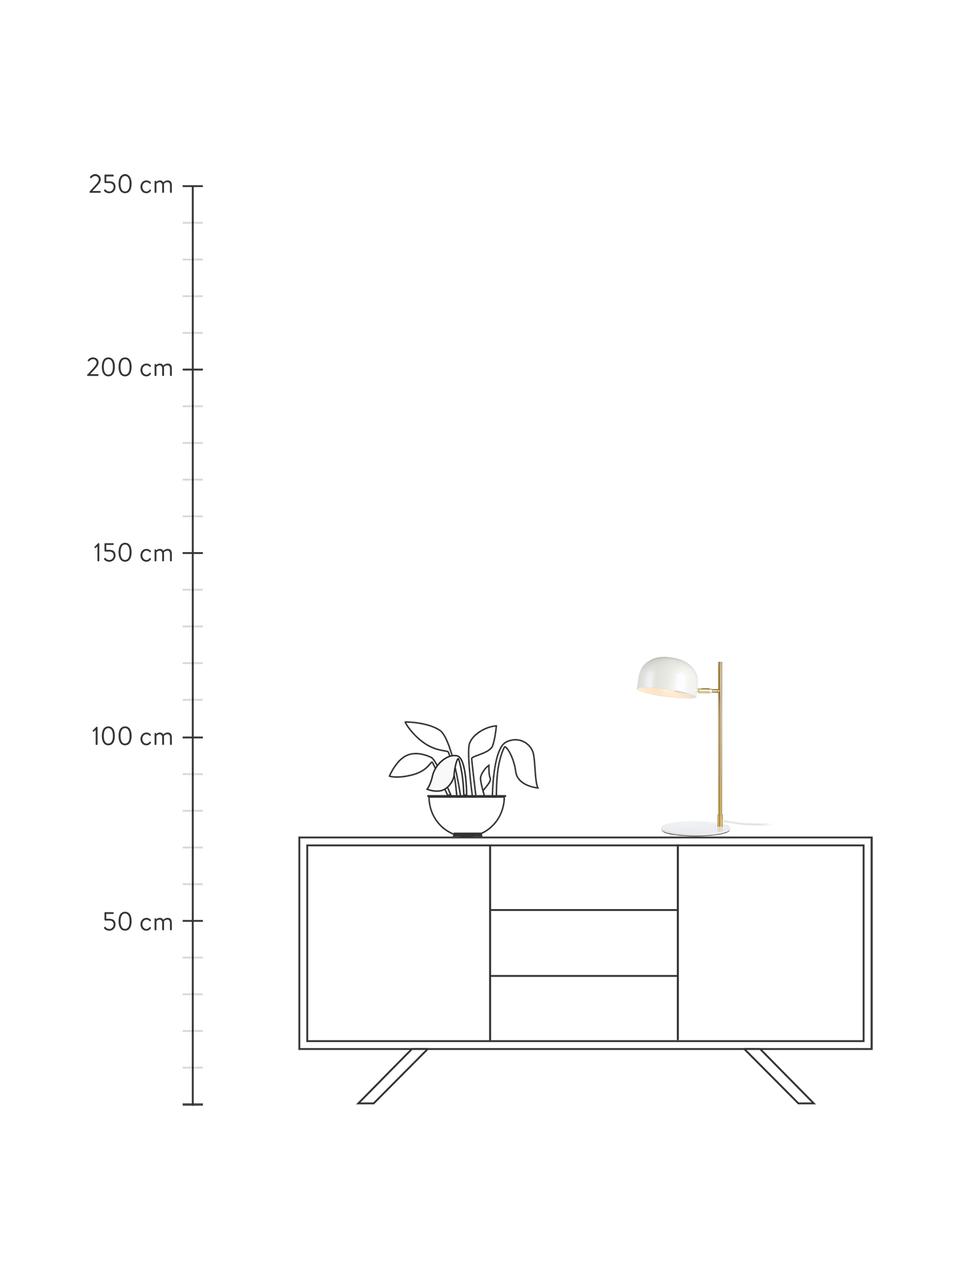 Lampa biurkowa Pose, Stelaż: metal powlekany, Biały, odcienie złotego, G 29 x W 49 cm